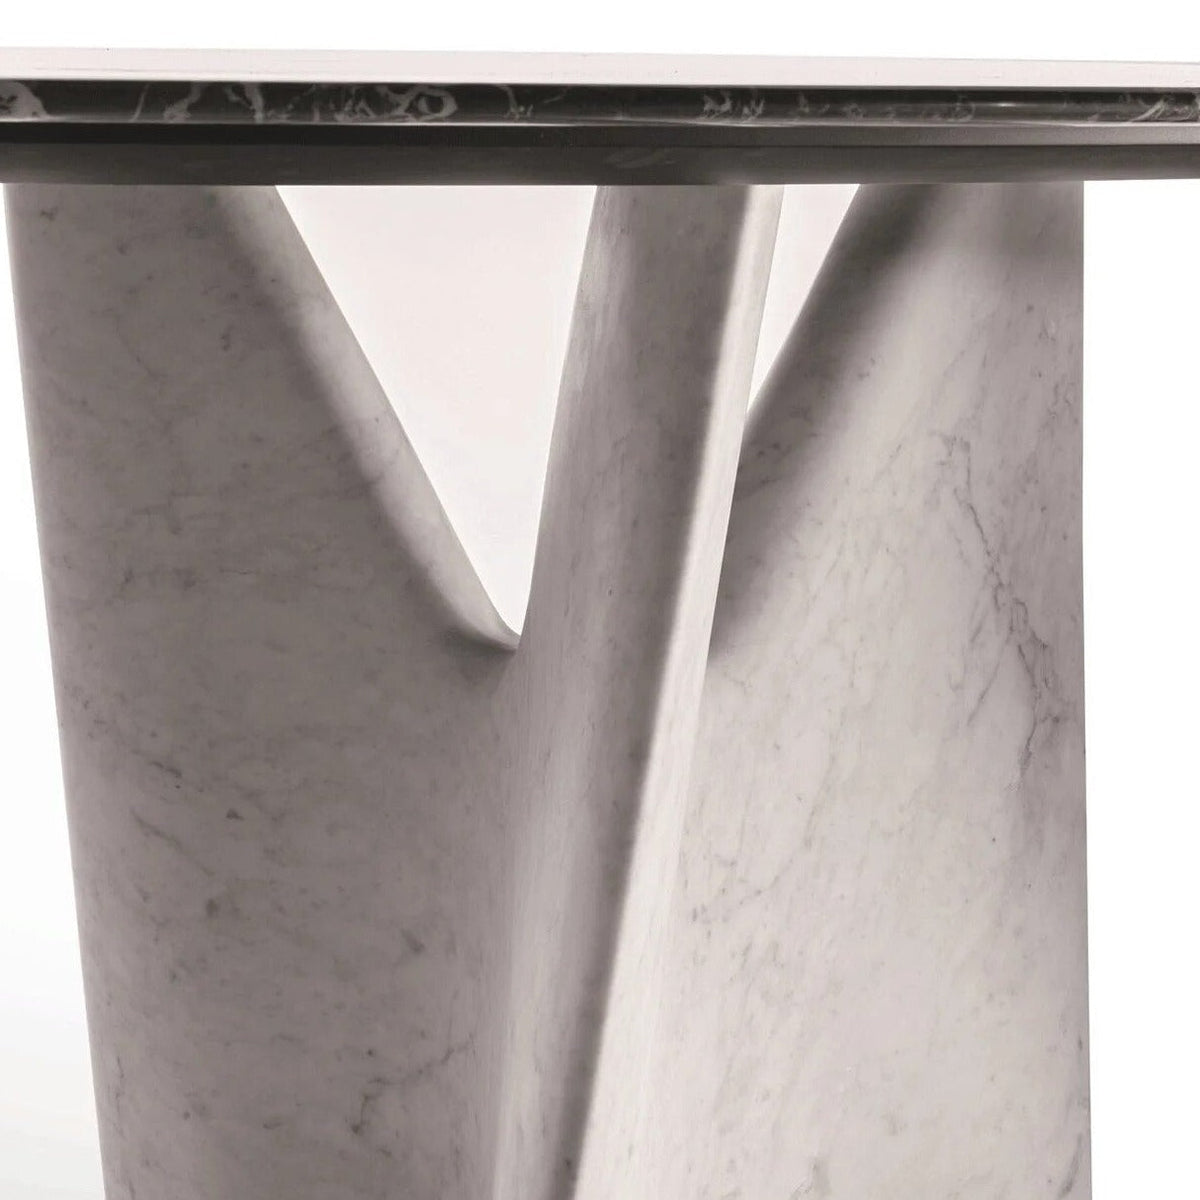 Italian Designer Marble Skeleton Dining Table-ChandeliersDecor